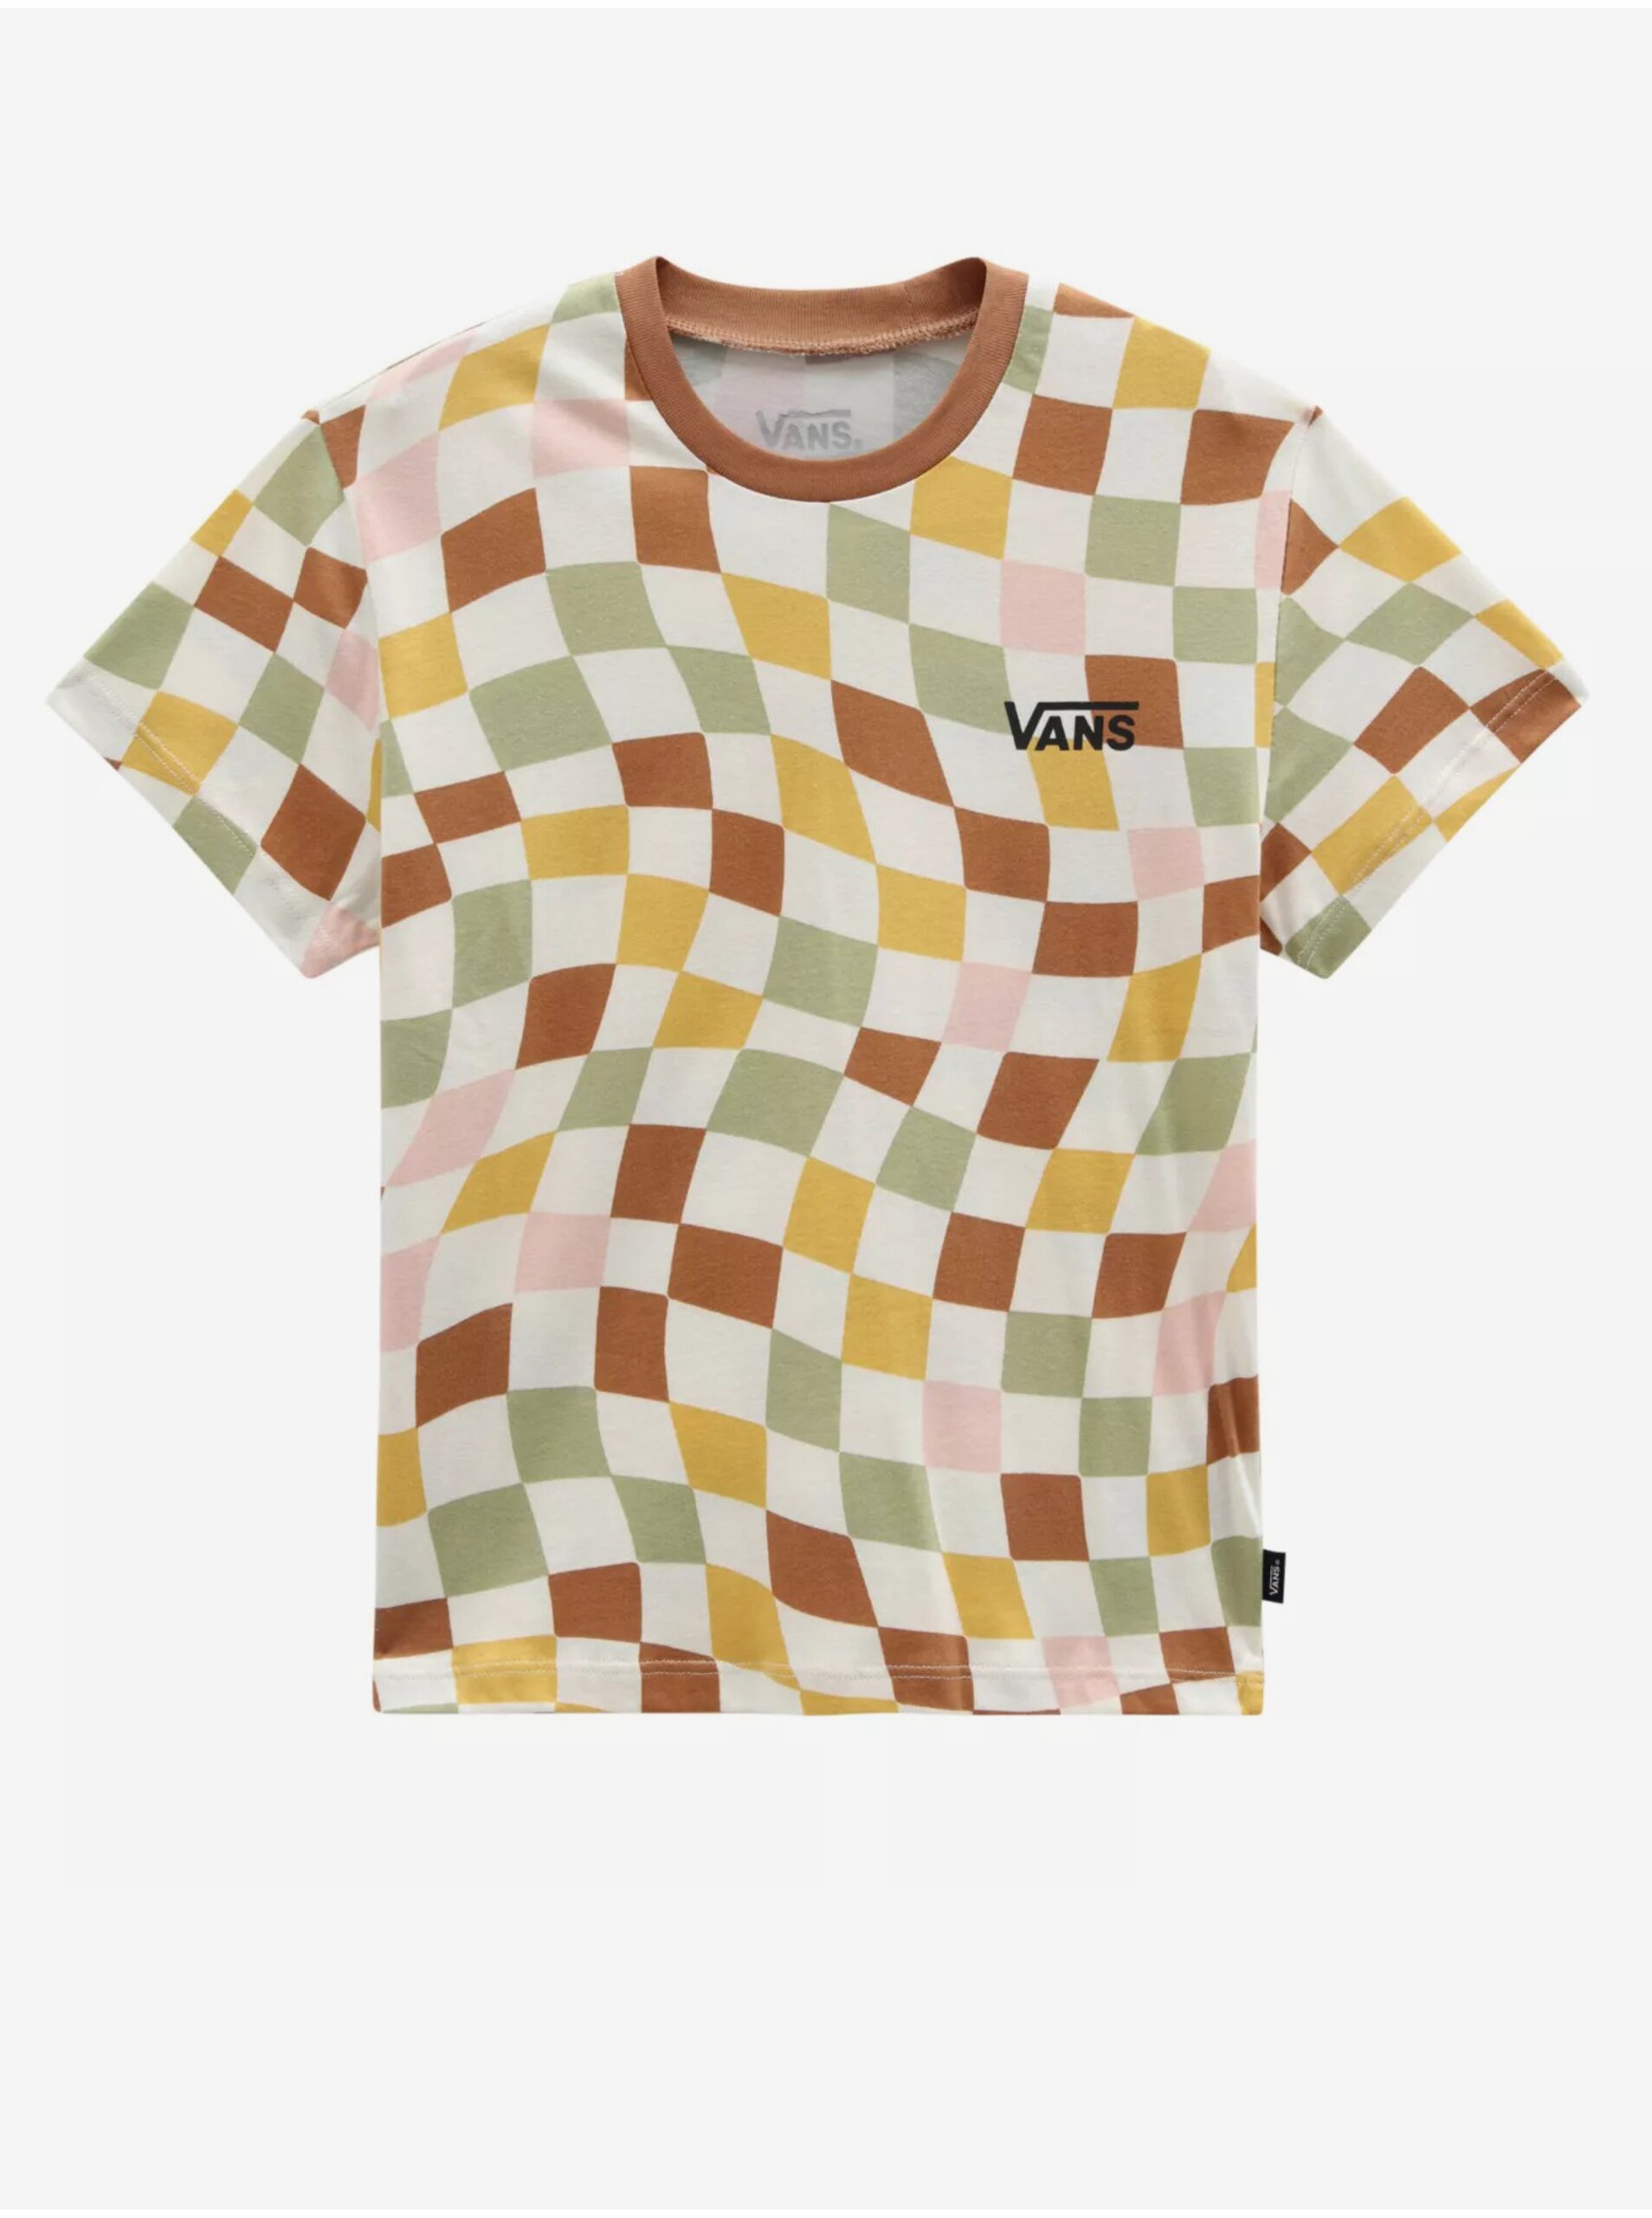 Lacno Bielo-hnedé dievčenské kockované tričko VANS Checker Print